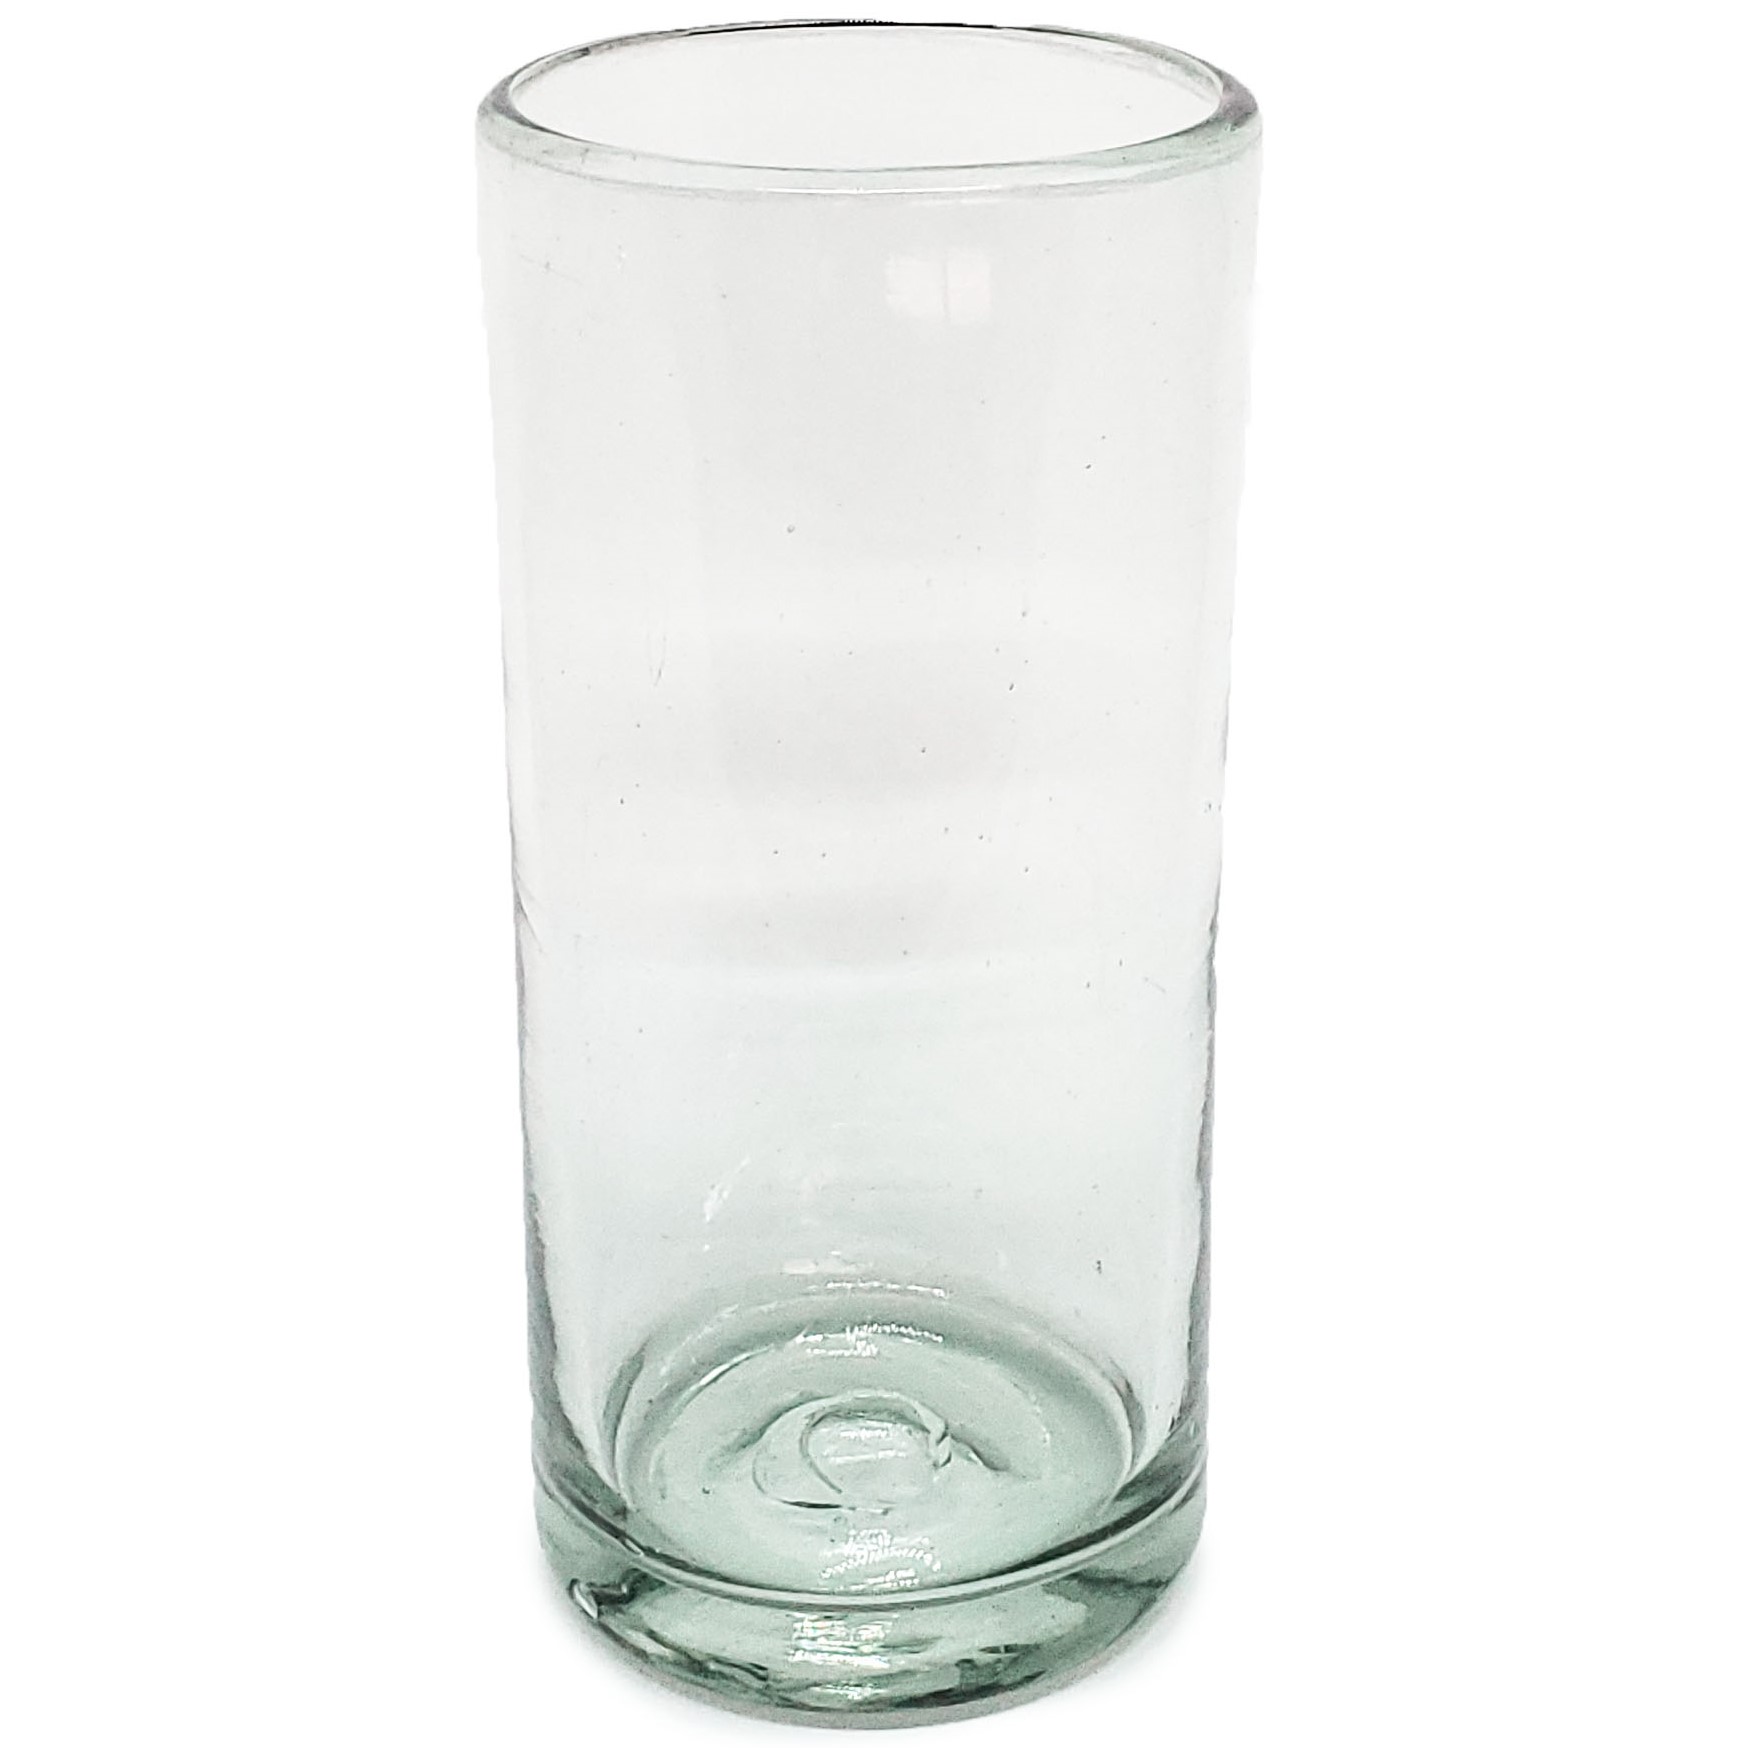 VIDRIO SOPLADO / Juego de 6 vasos Jumbo transparentes, 20 oz, Vidrio Reciclado, Libre de Plomo y Toxinas